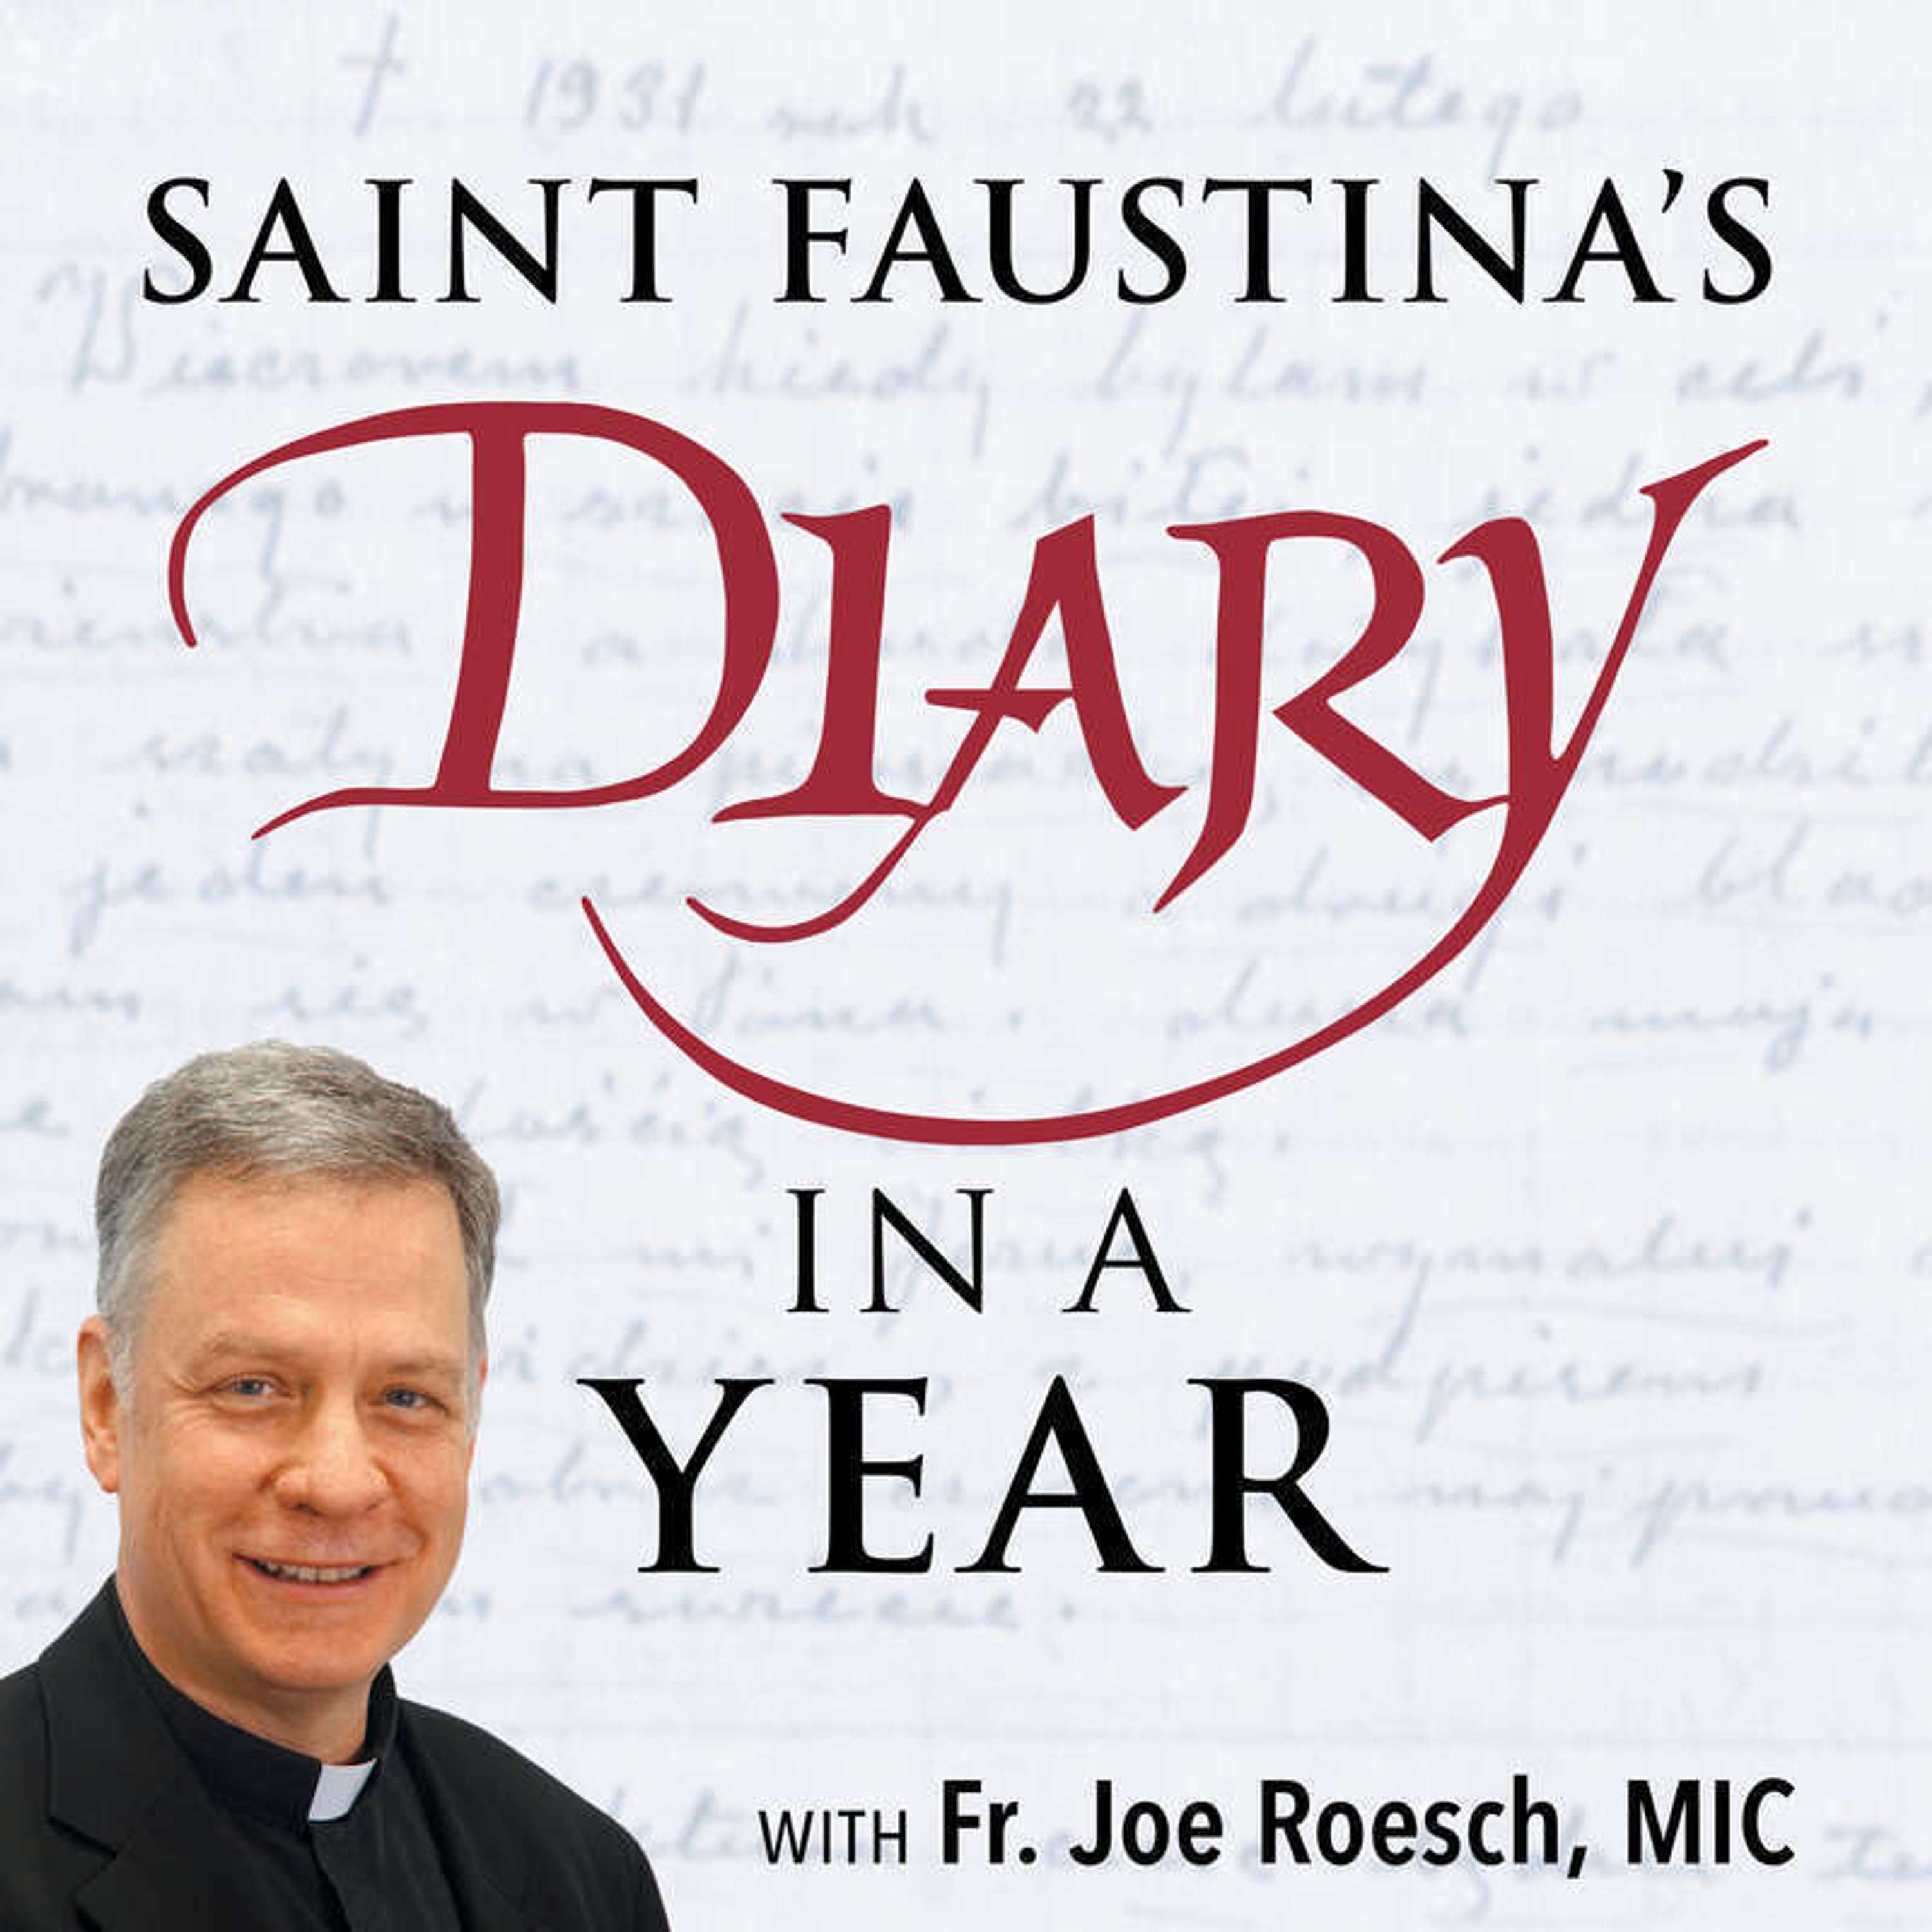 Introduction: Join Fr. Joe Roesch, MIC